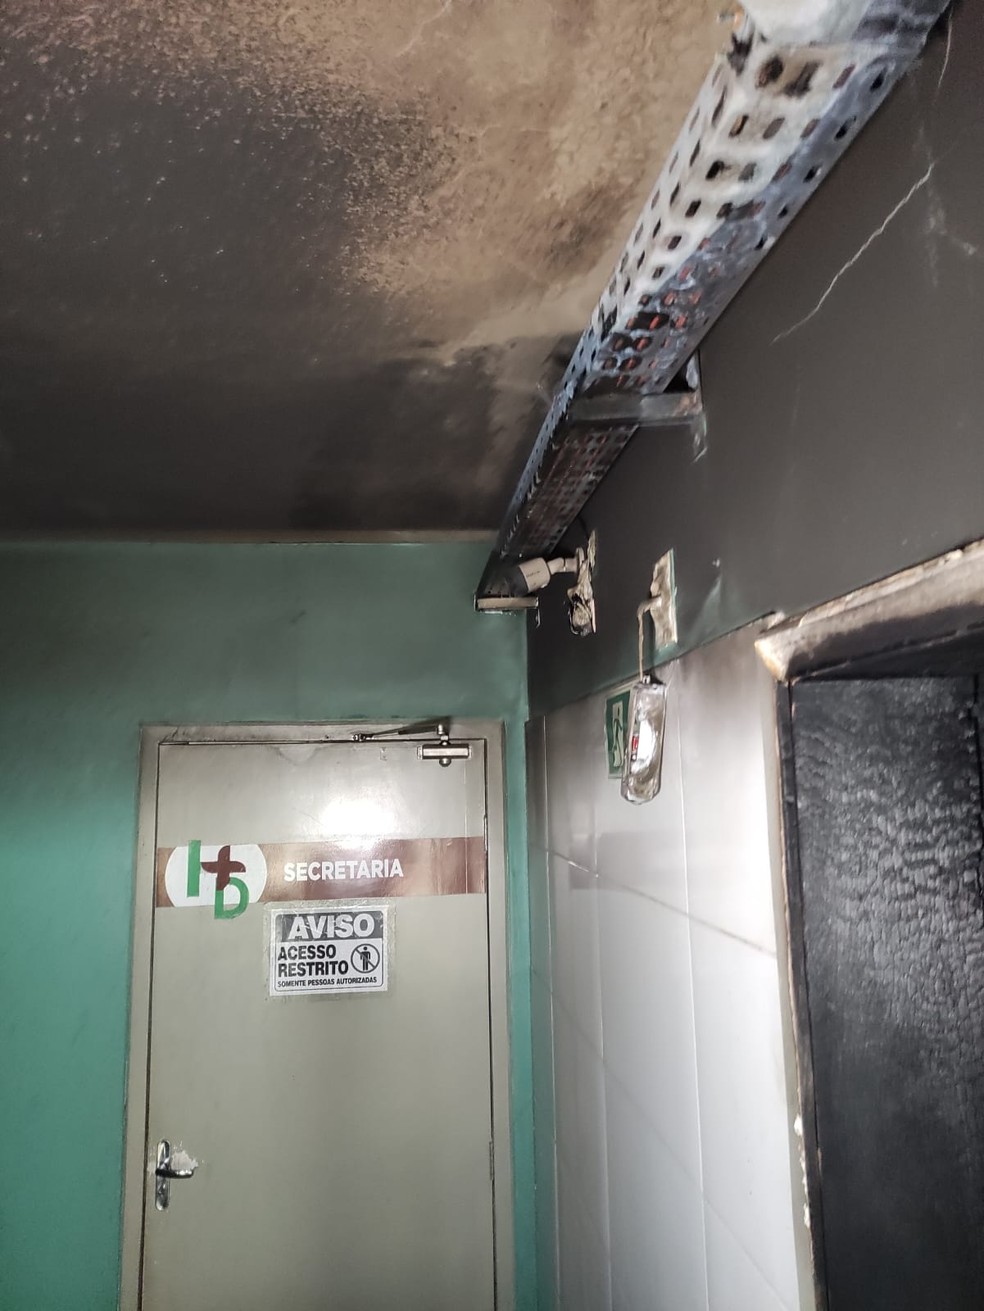 Incêndio atinge Hospital do Dirceu II, na Zona Sudeste de Teresina; pacientes são transferidos — Foto: Francisco Lima/Rede Clube